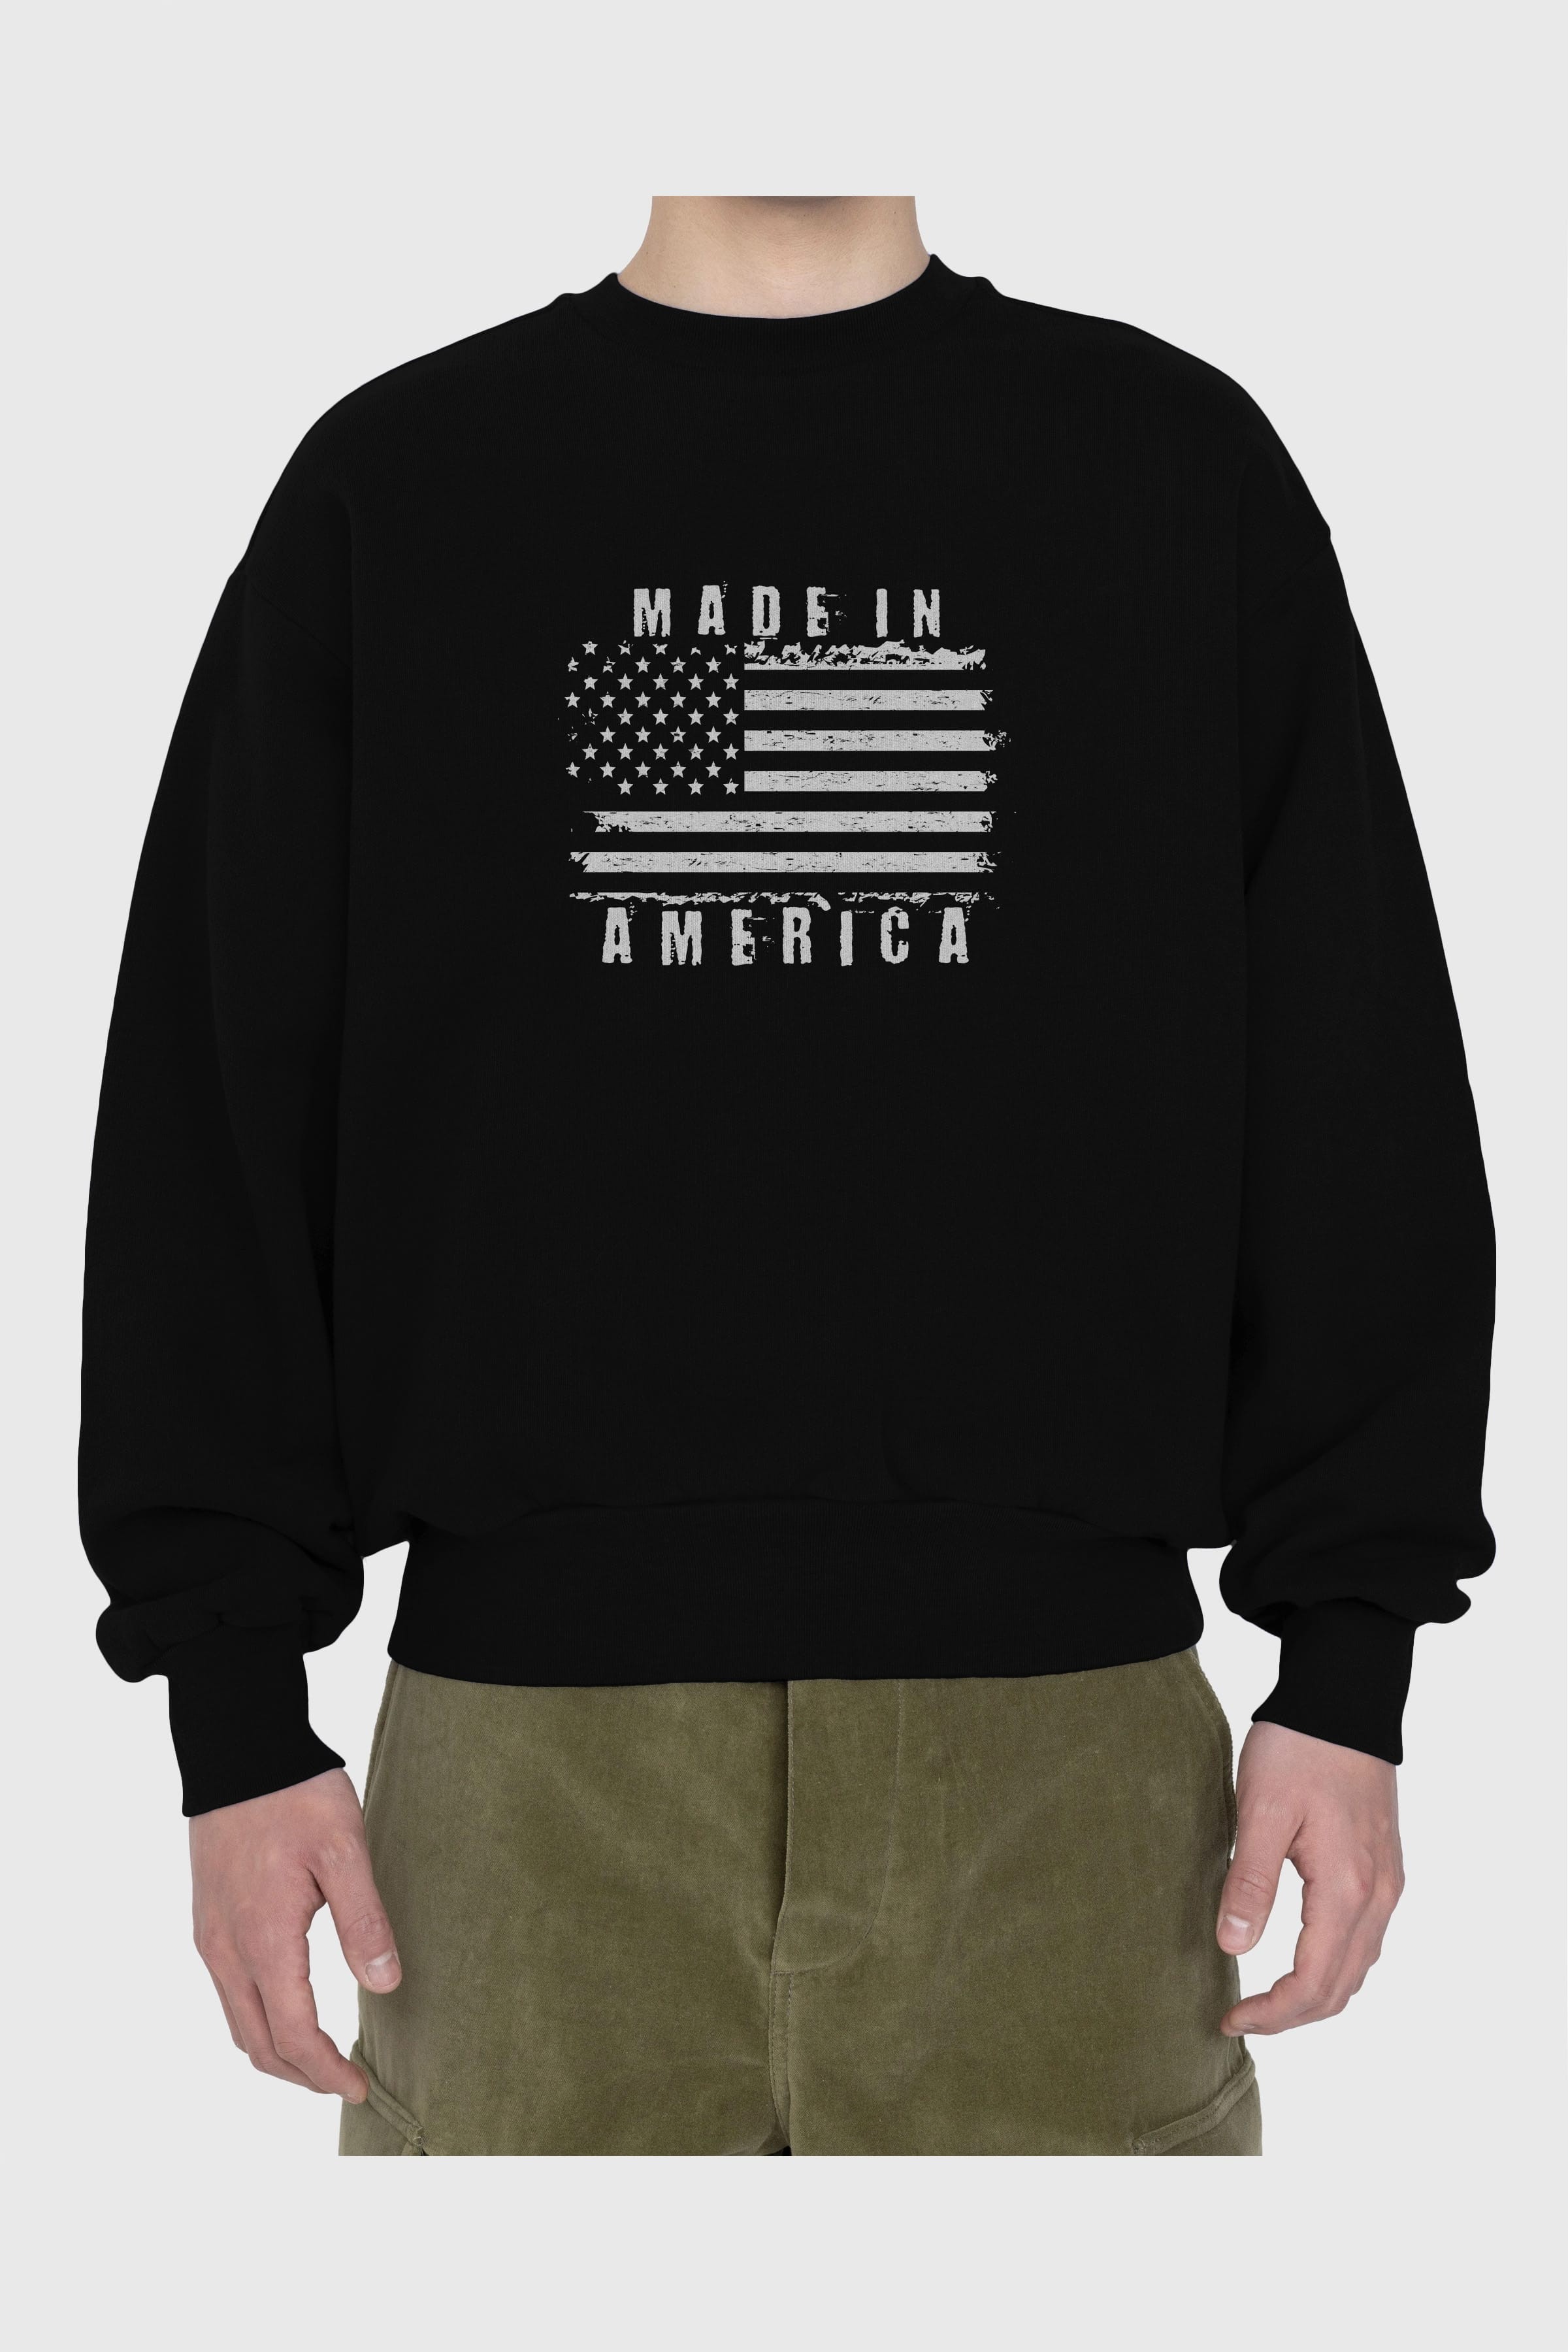 Made in America Ön Baskılı Oversize Sweatshirt Erkek Kadın Unisex